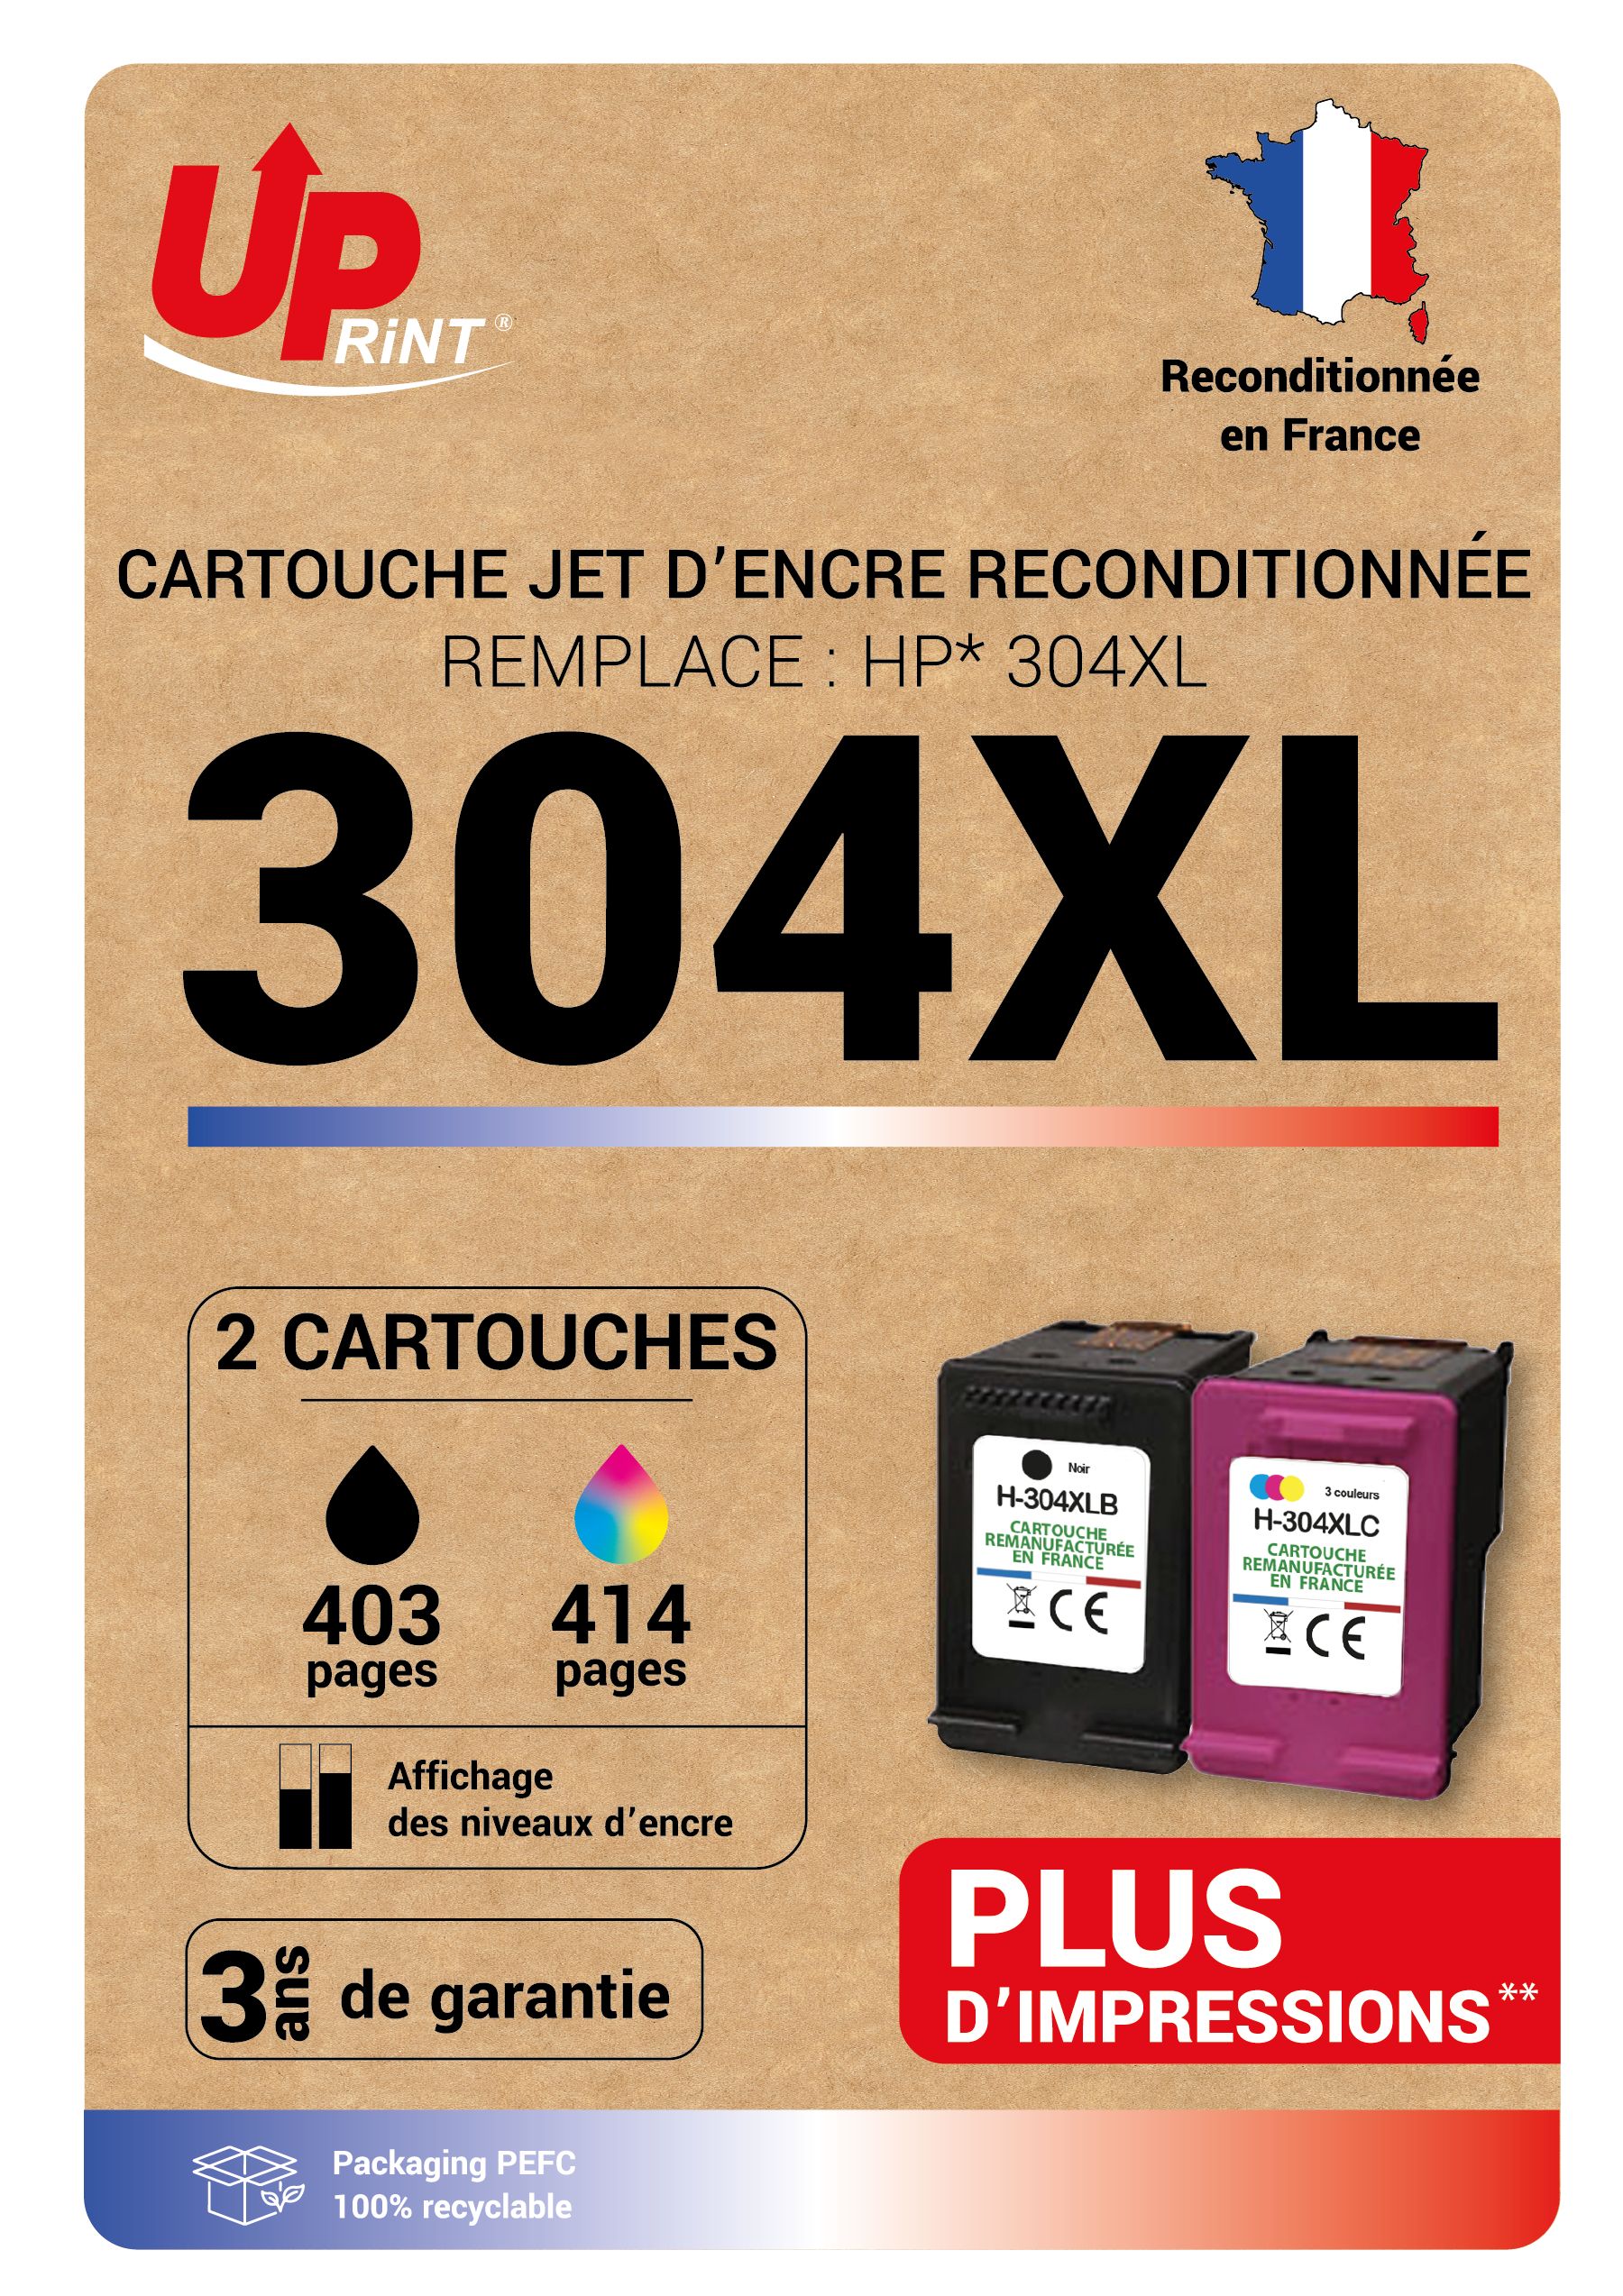 Cartouche HP 304XL Noir compatible